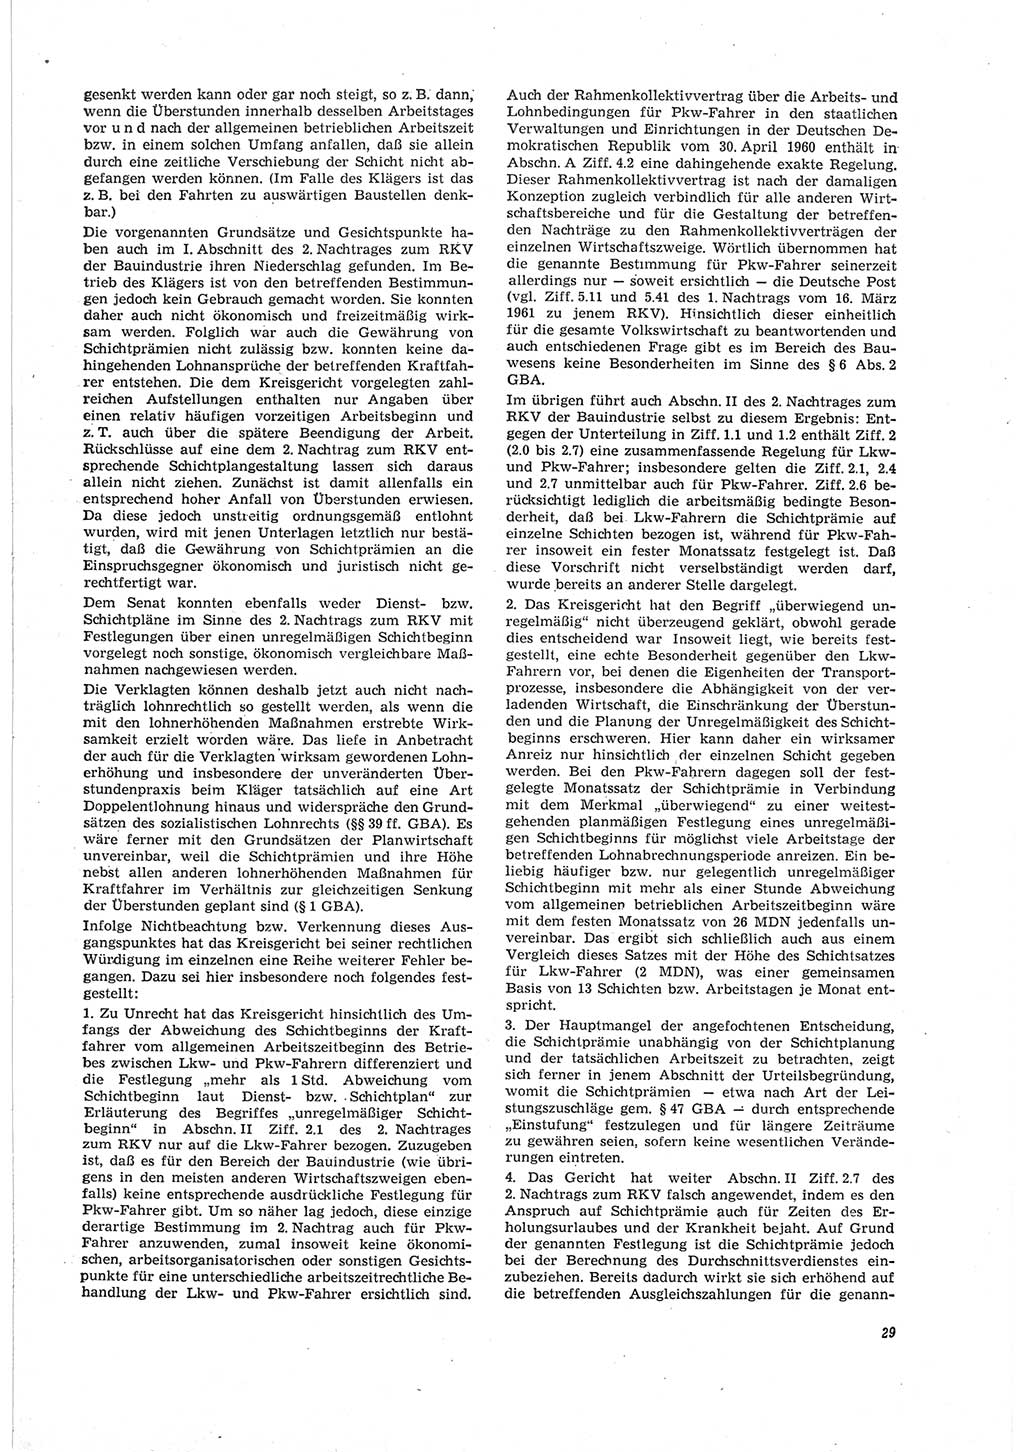 Neue Justiz (NJ), Zeitschrift für Recht und Rechtswissenschaft [Deutsche Demokratische Republik (DDR)], 19. Jahrgang 1965, Seite 29 (NJ DDR 1965, S. 29)